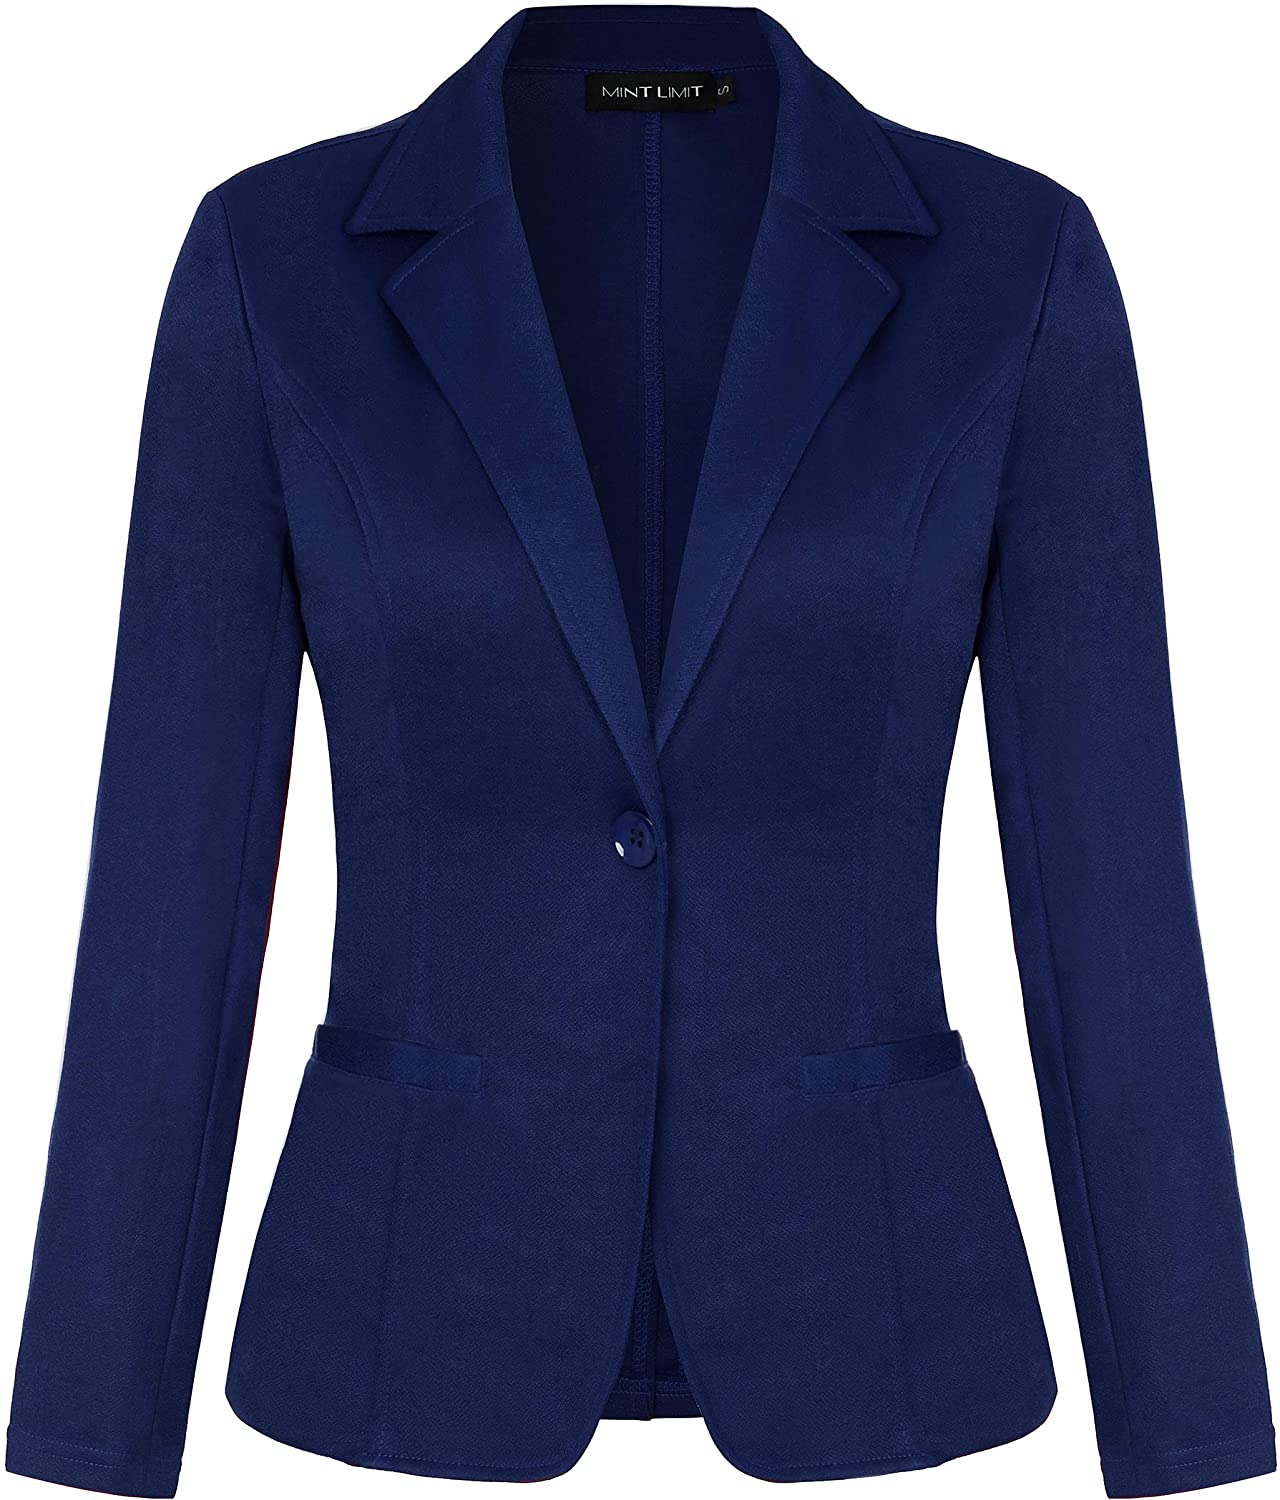 MINTLIMIT Women's Casual Long Sleeve Zip Up Jacket Tops Blazer Cardigan Autumn Winter Coat 